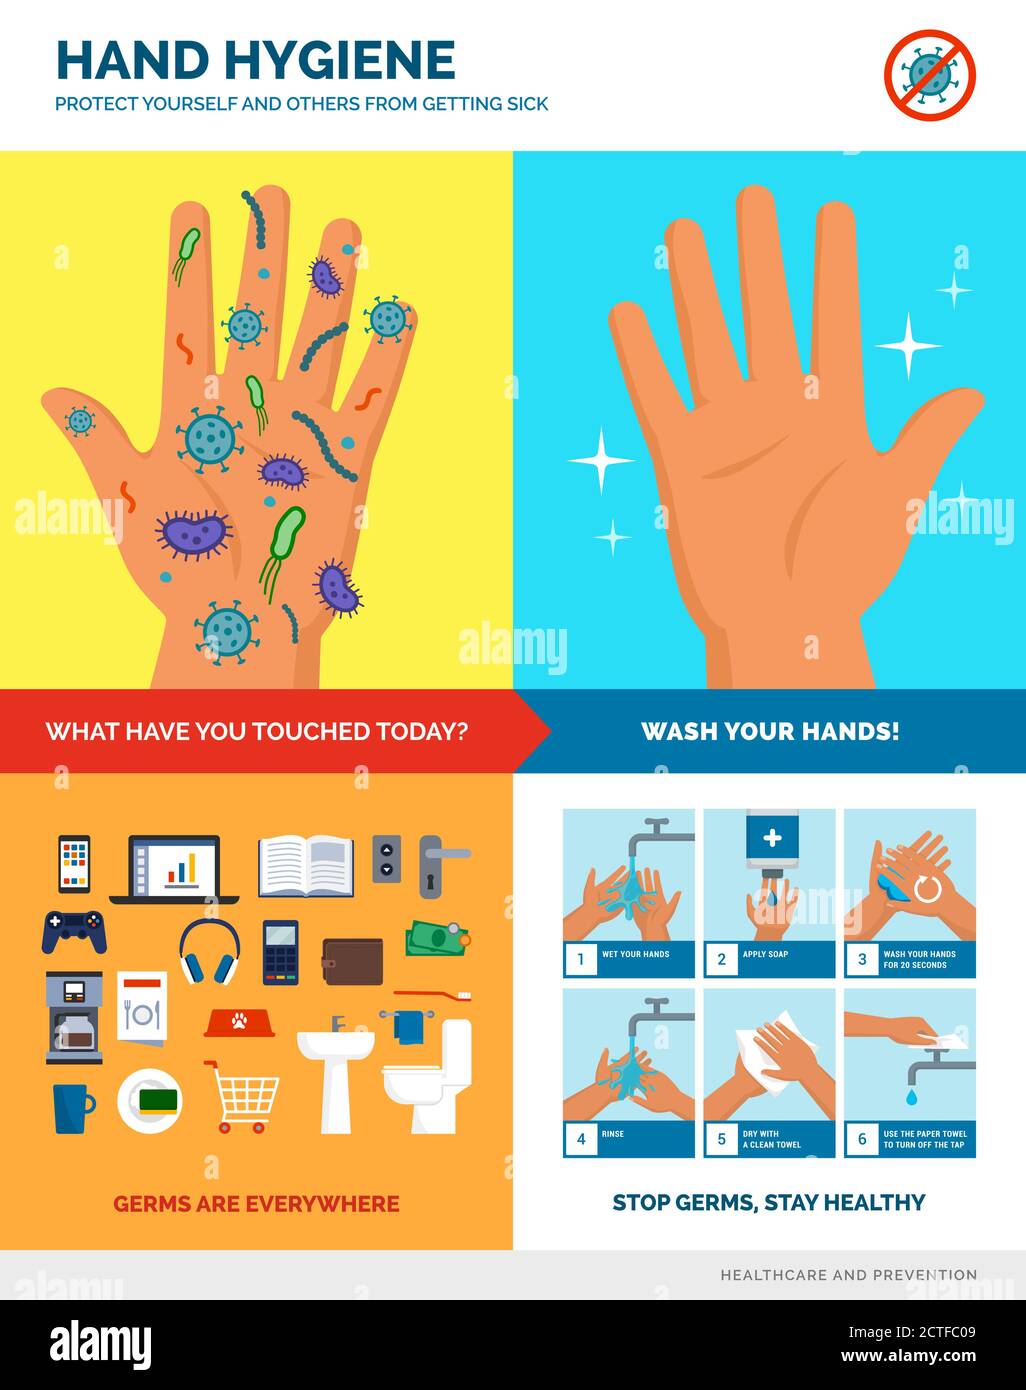 Handhygiene und sicheres Händewaschen Poster: Handwaschverfahren, schmutzige und saubere Hände, die meisten schmutzigen Oberflächen und Objekte, pädagogische Infografik Stock Vektor